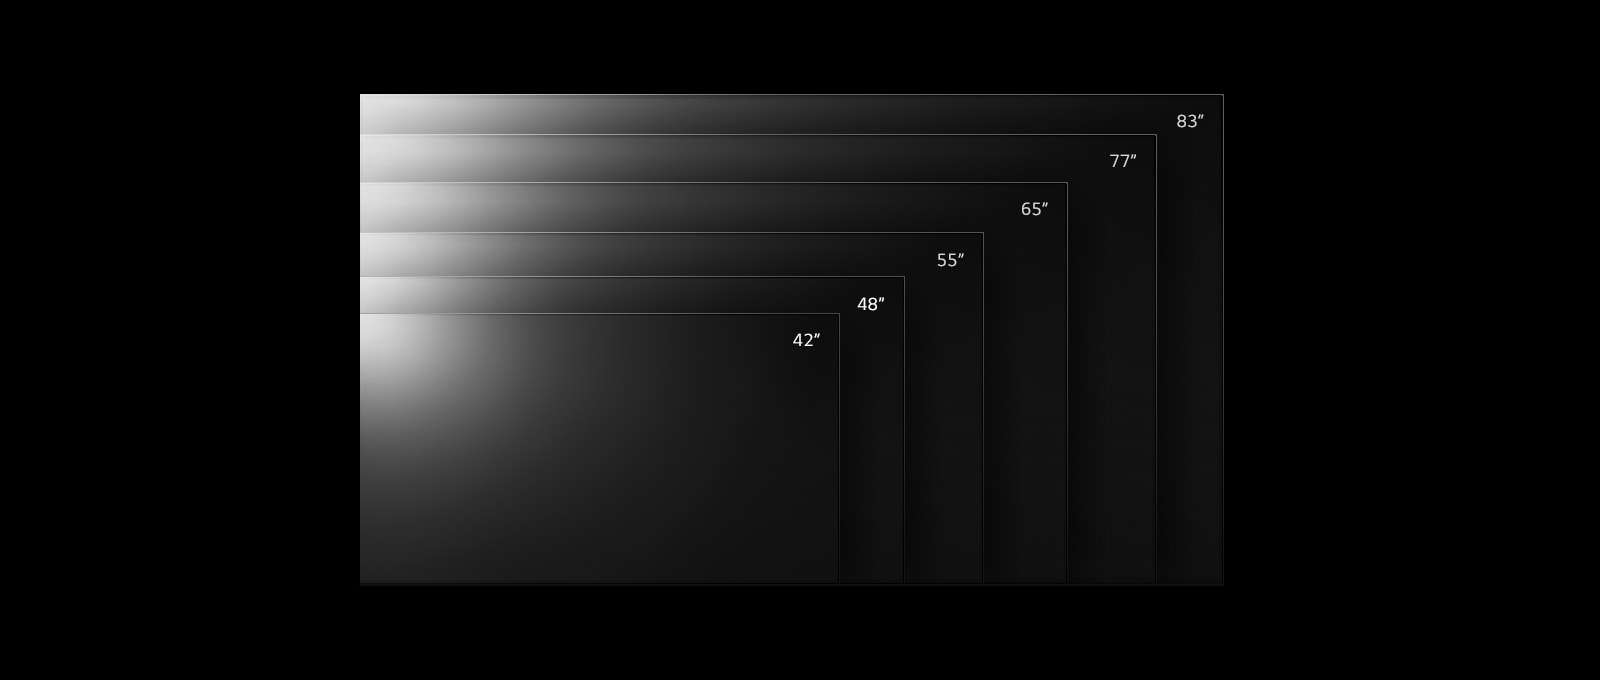 Paleta izdelkov LG OLED evo TV C2 v različnih velikostih od 42 do 83 palcev